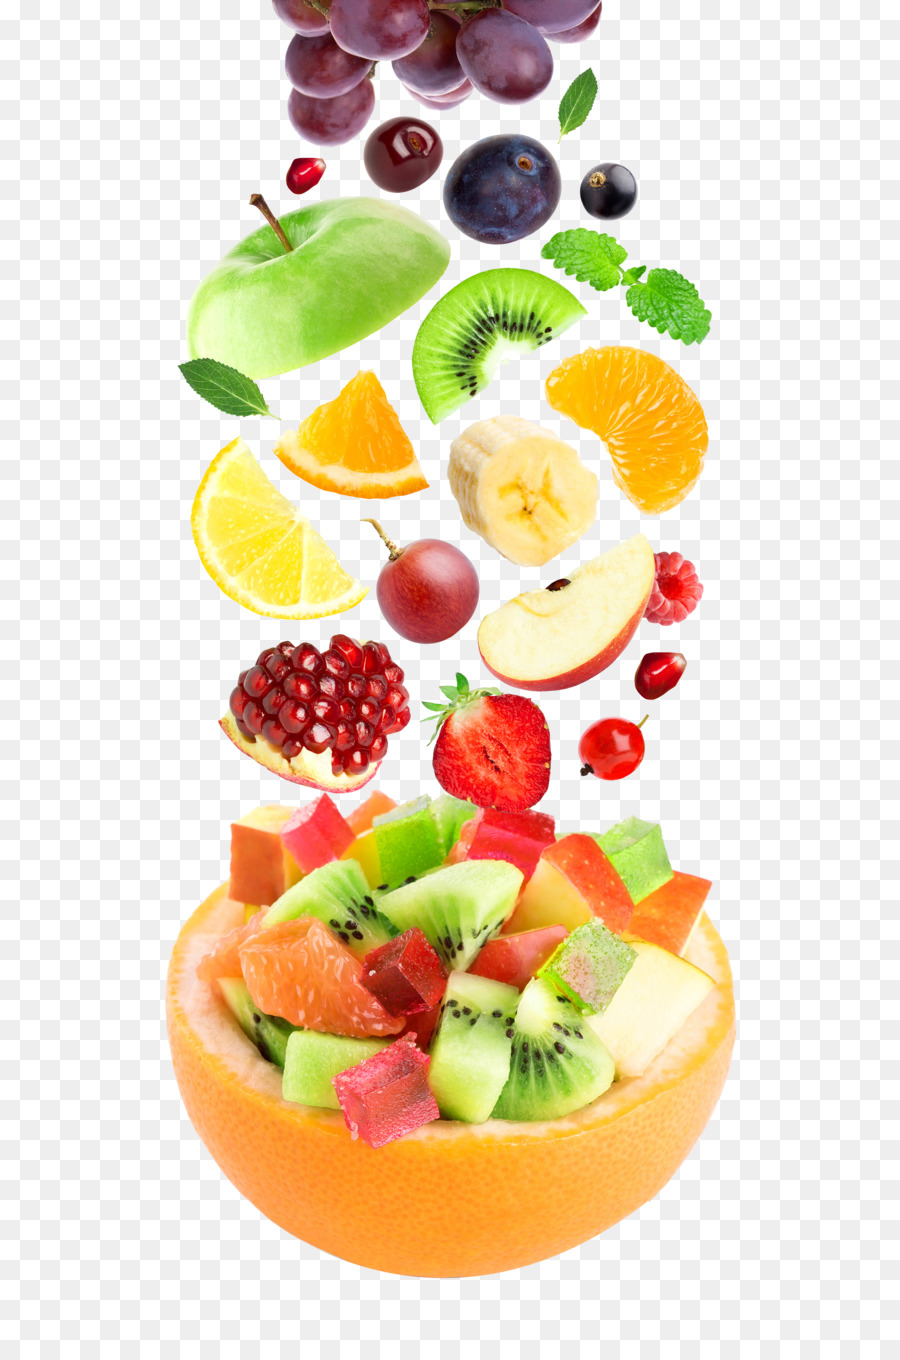 Fruit salad Berry Freshfel Europe Food - Falling fruit png download - 3244*4865 - Free Transparent Fruit Salad png Download.